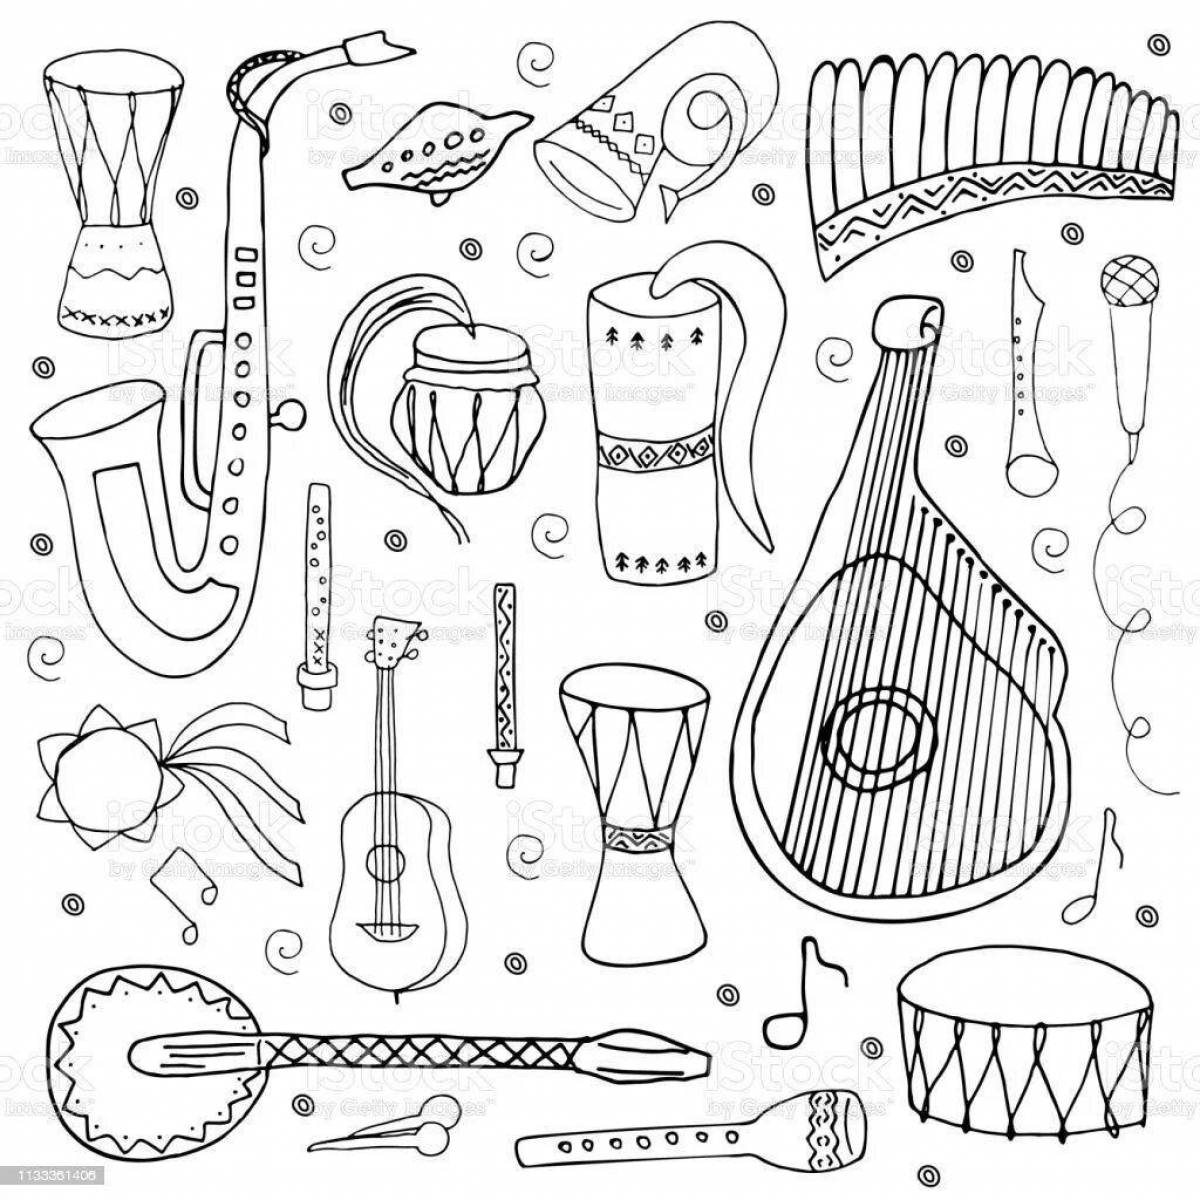 Очаровательная раскраска русских народных инструментов для детей